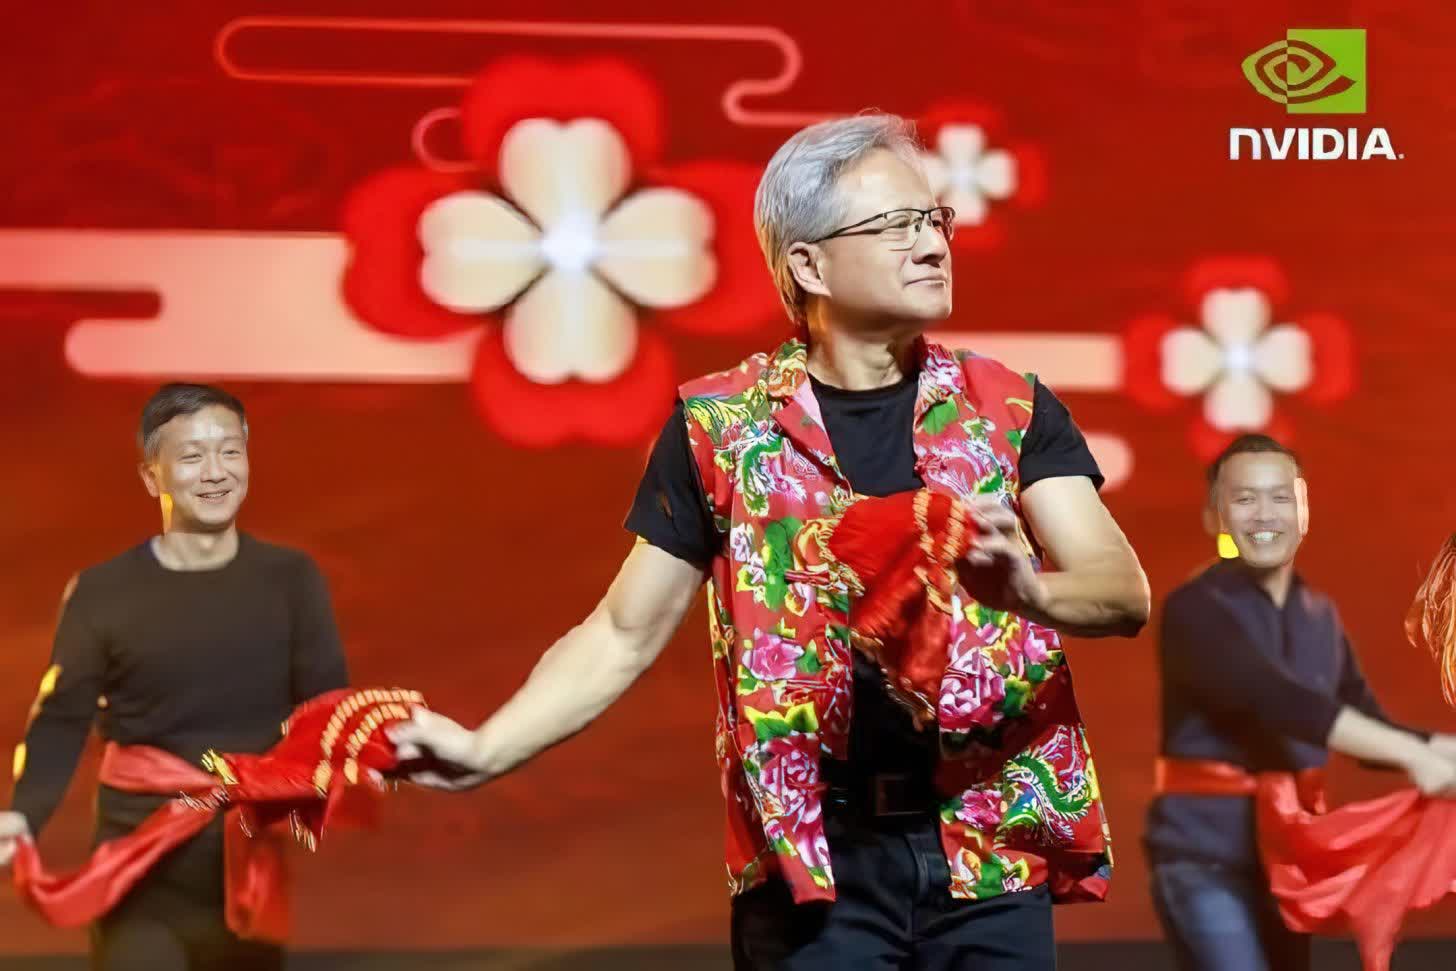 El director ejecutivo de Nvidia, Jensen Huang, visita China para celebrar con los empleados en medio de las restricciones a los chips de IA